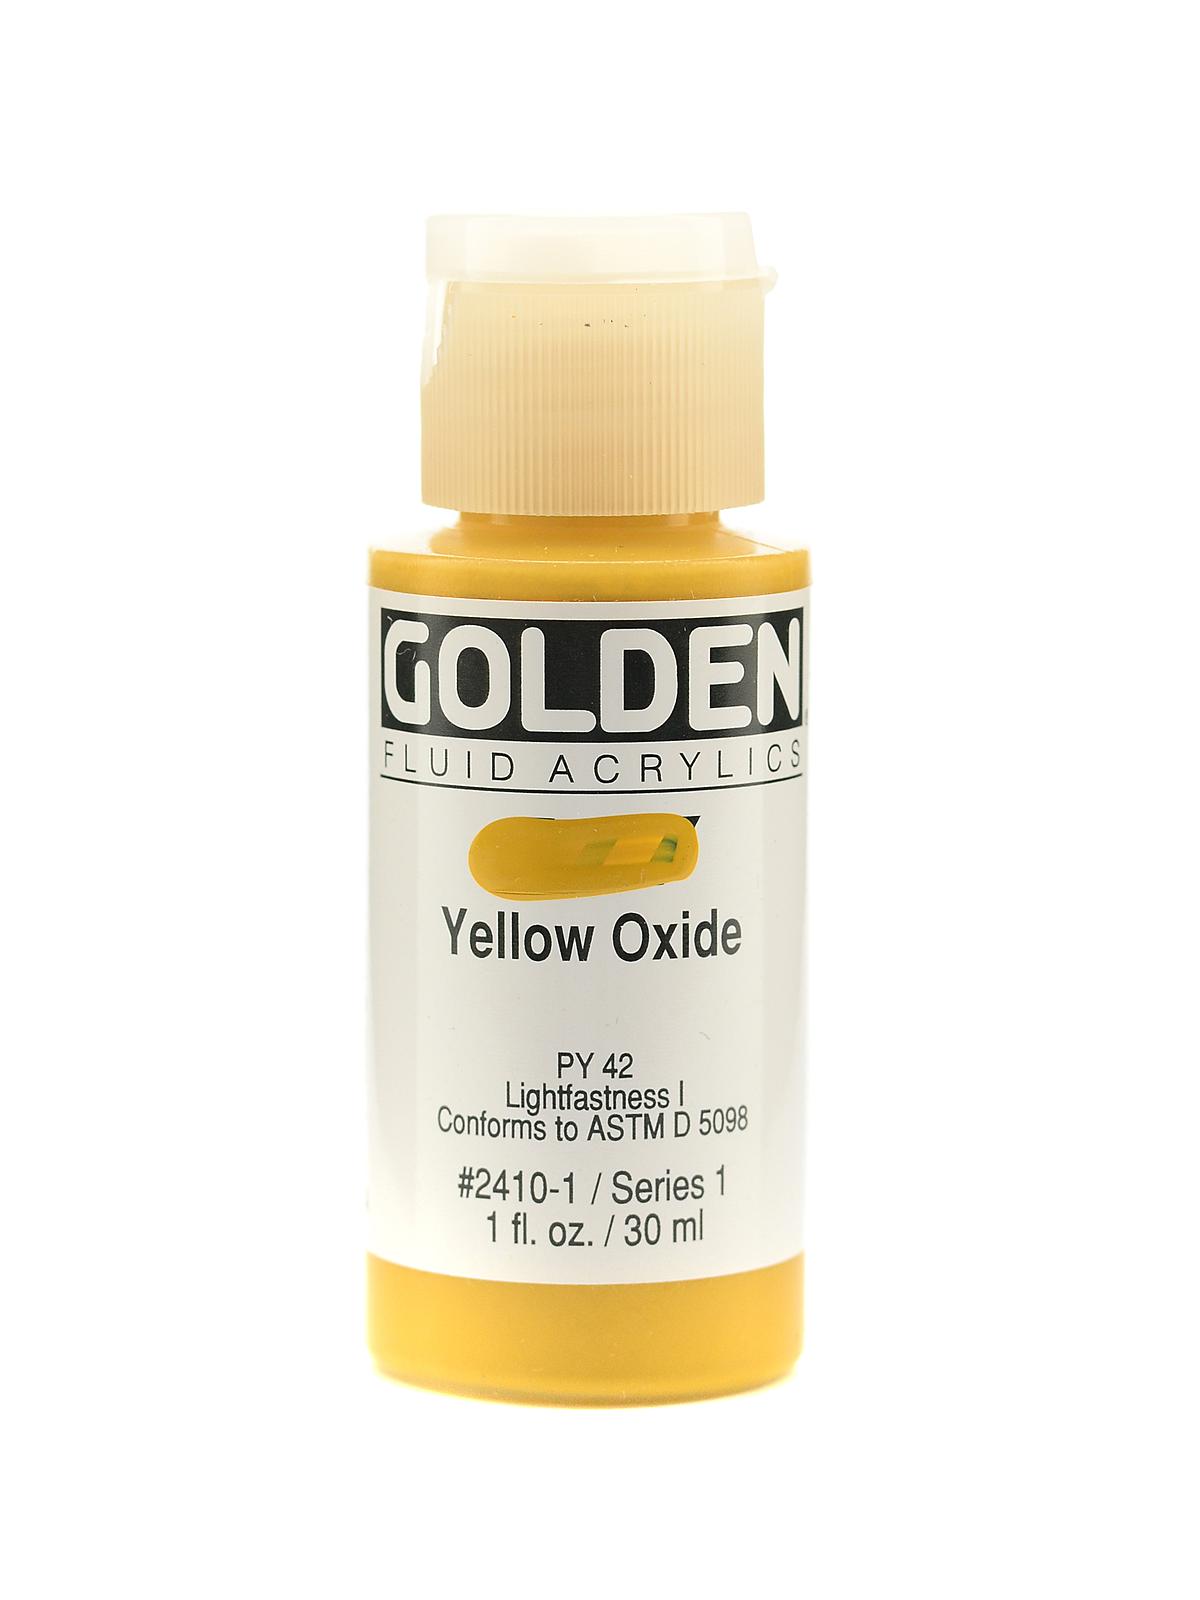 Fluid Acrylics yellow oxide 1 oz.